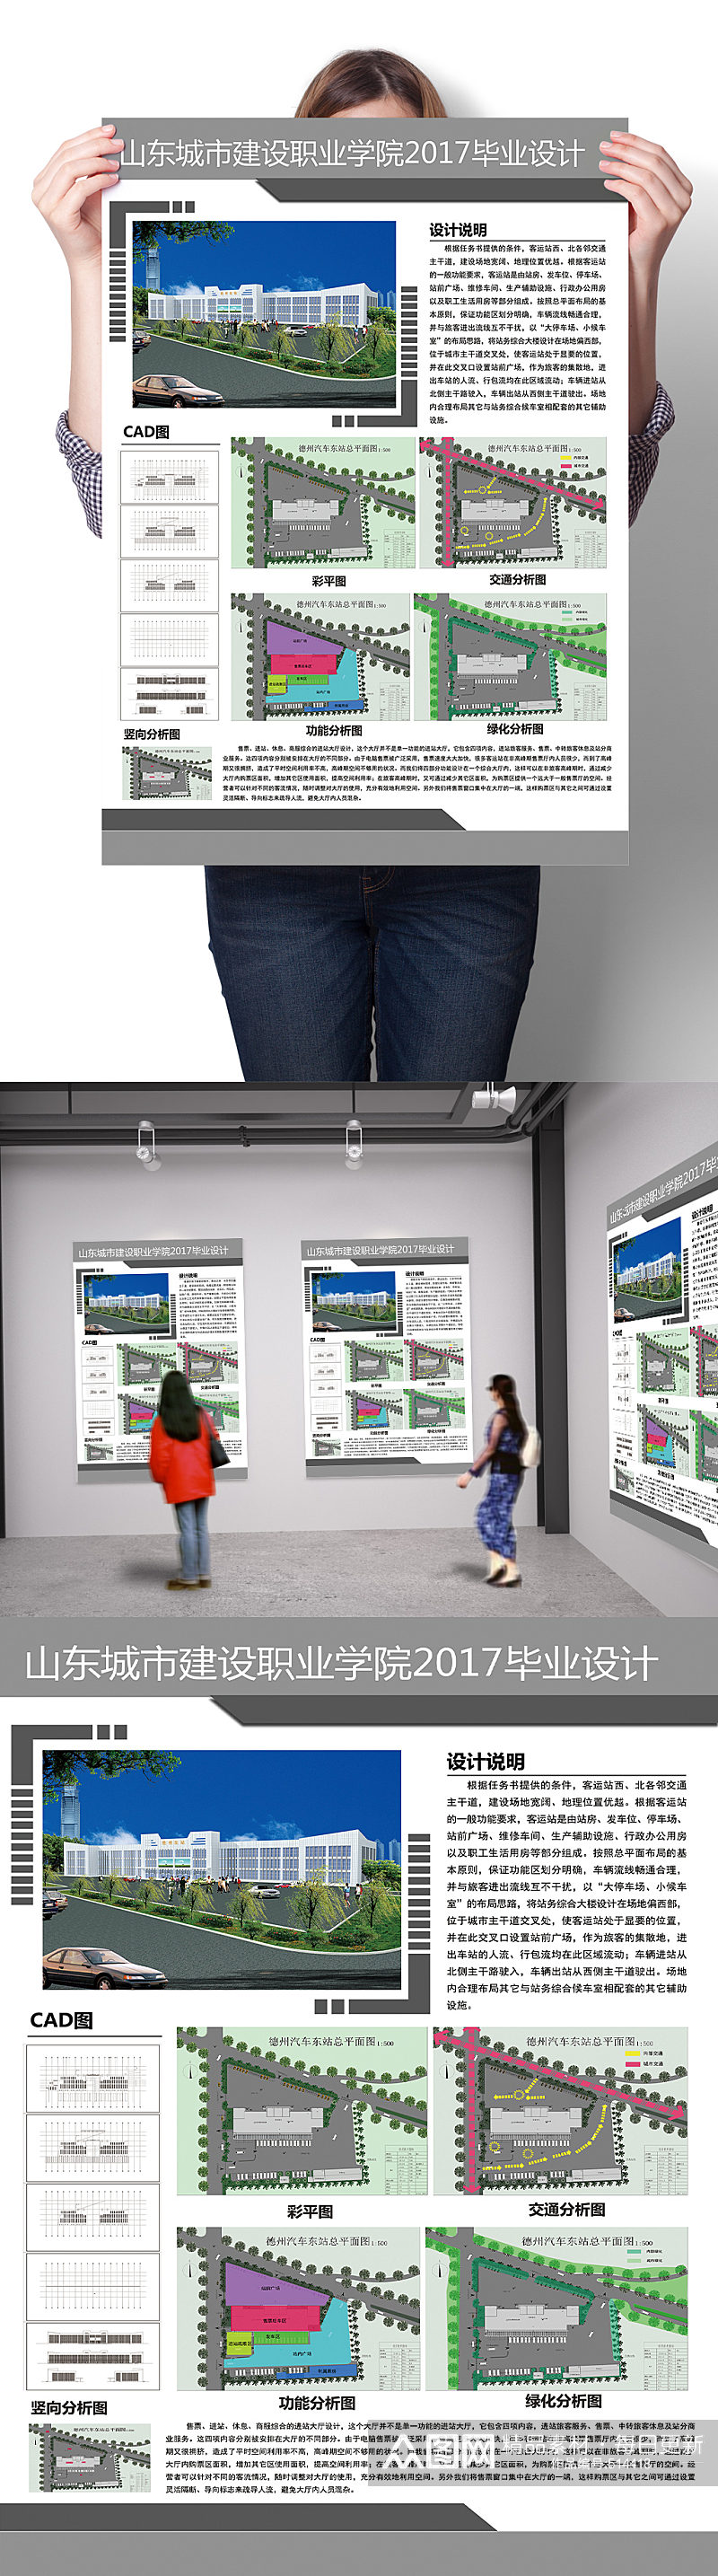 学校园区环艺排版环境艺术版式设计景观设计 室内设计毕业展海报展板素材